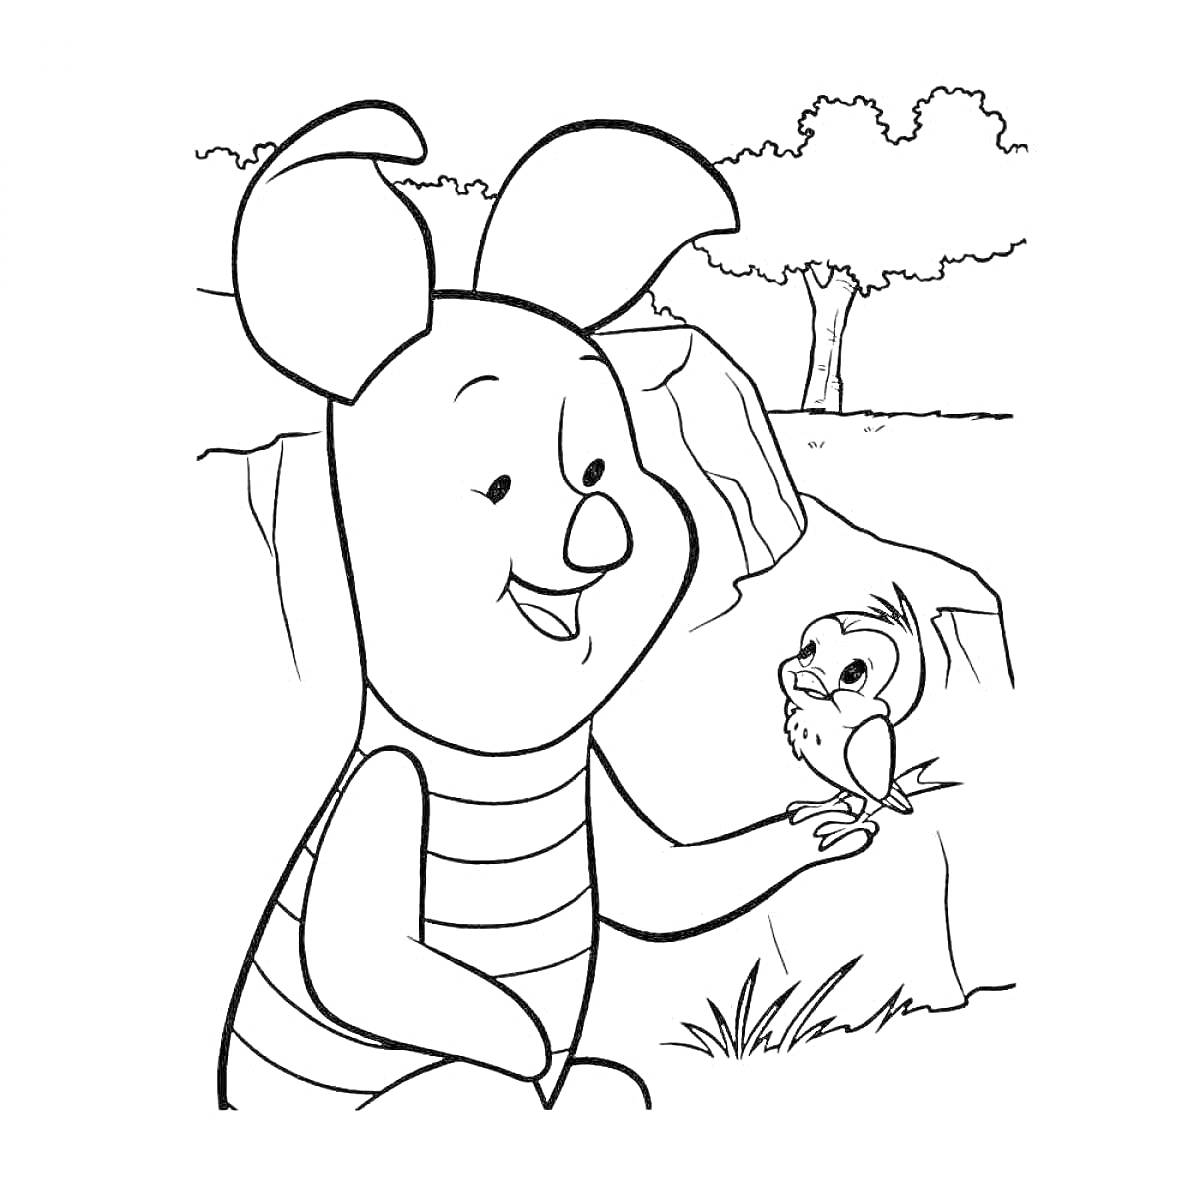 Персонаж с большими ушами и полосатой майкой общается с птичкой на фоне природы (деревья, камни, трава)